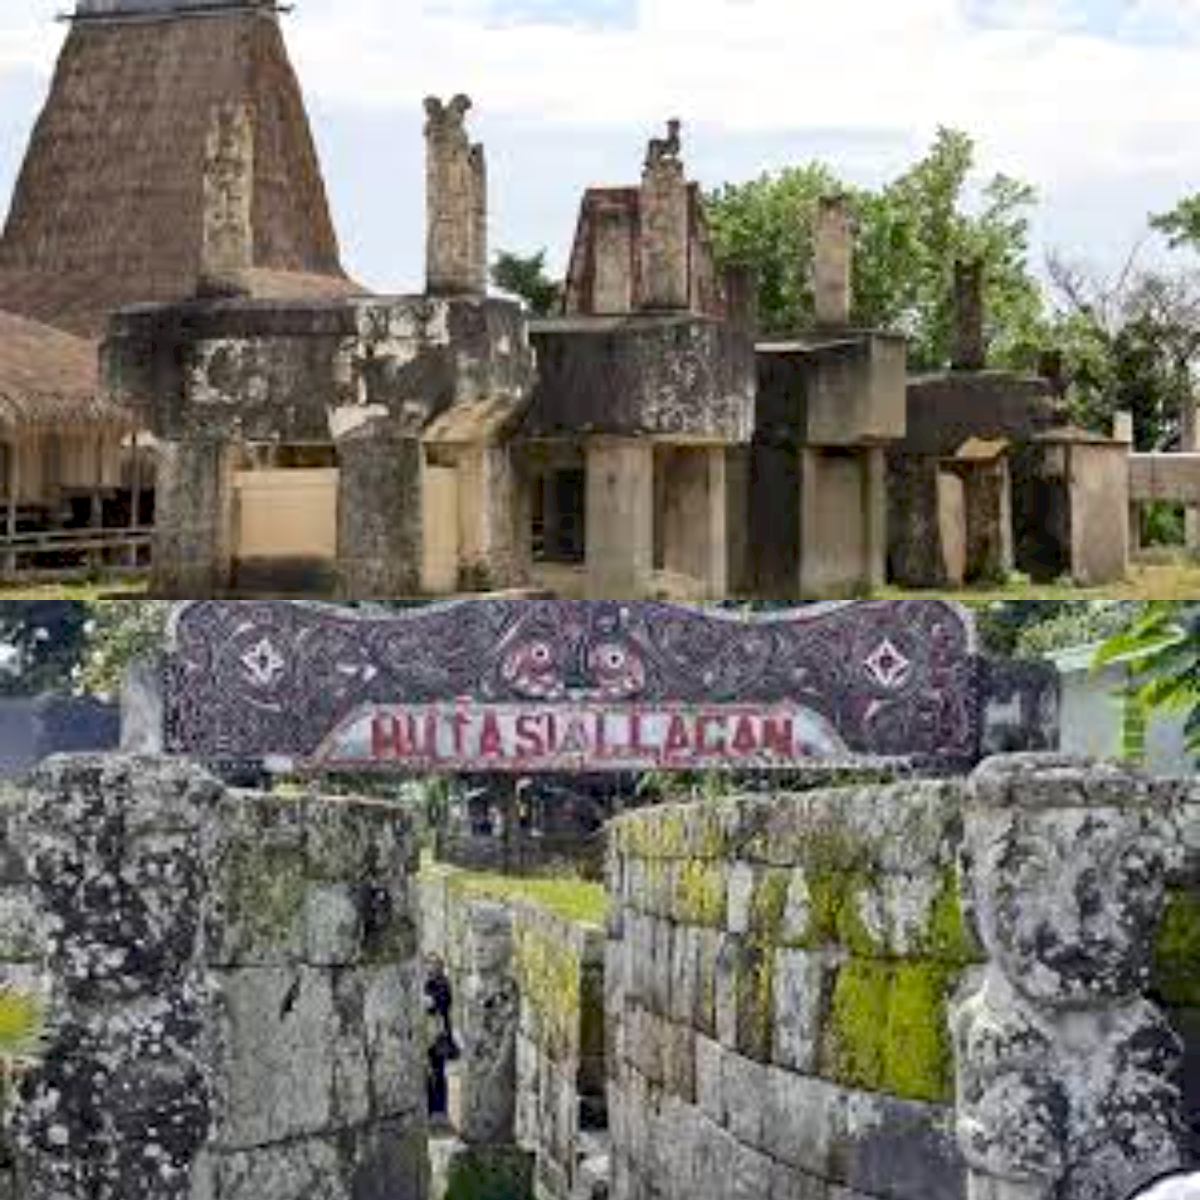 Menelusuri Keajaiban Prasejarah! 6 Desa Wisata Megalith di Indonesia Ini Sangat Menakjubkan